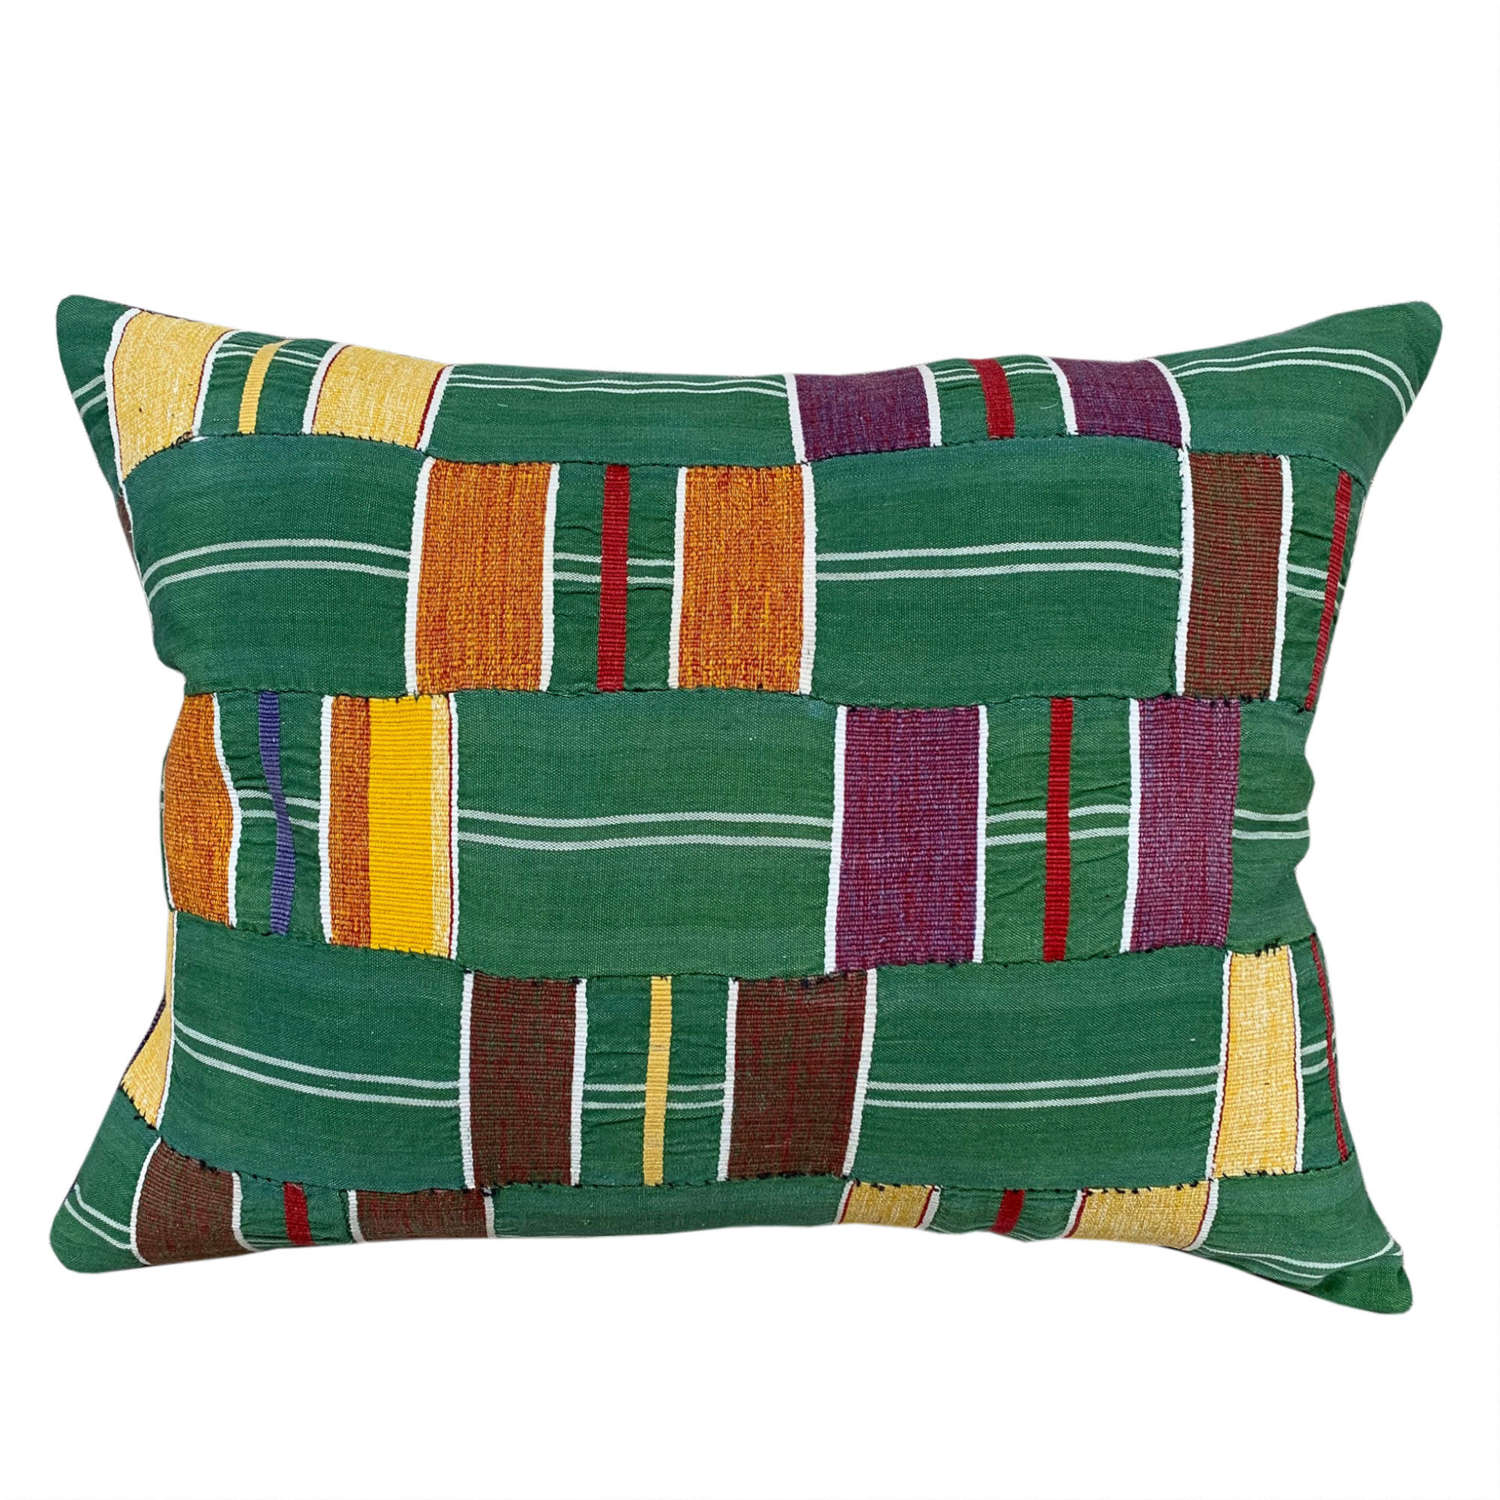 Green Ewe cushions